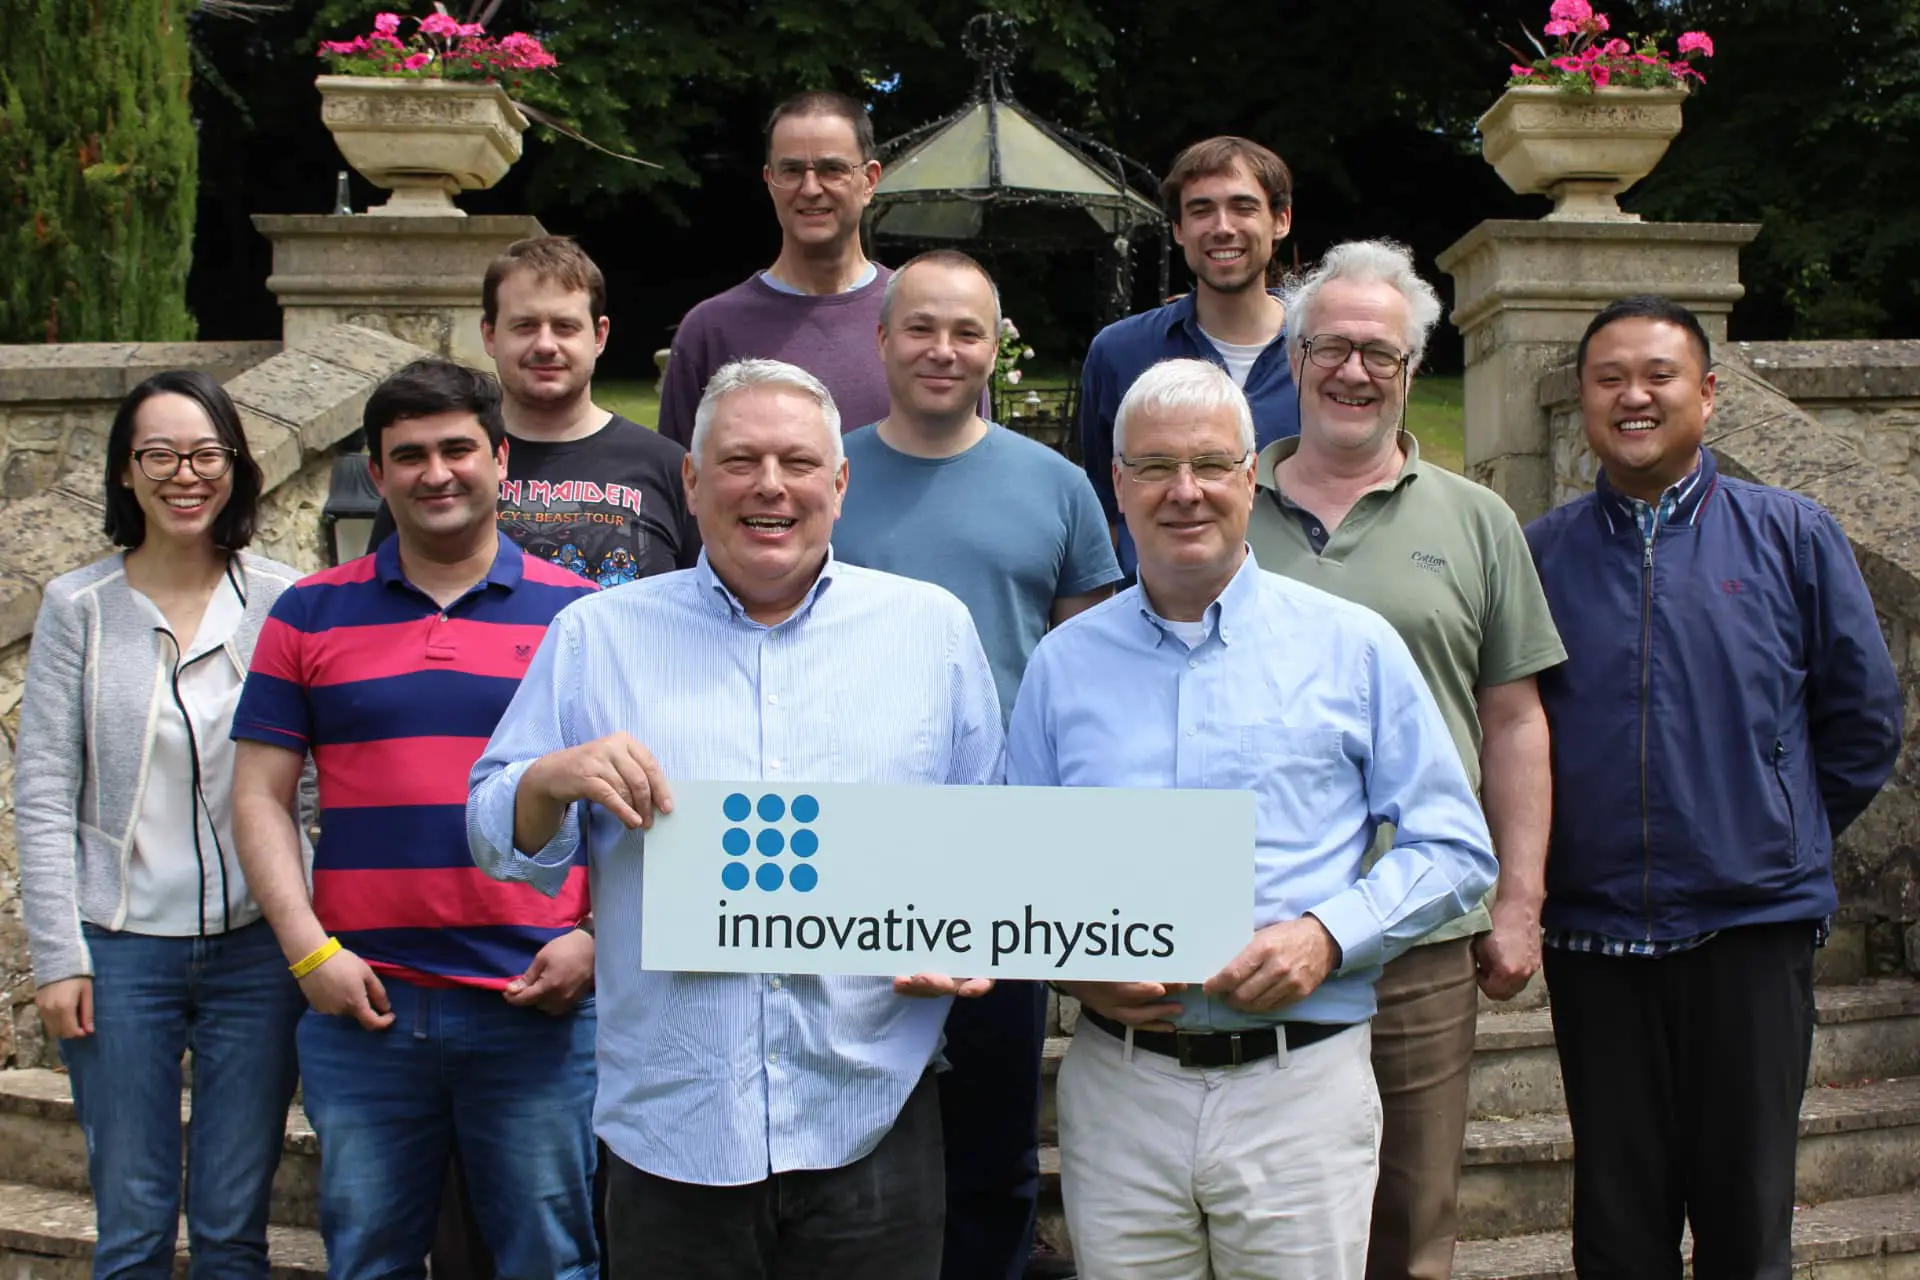 Innovative Physics company members